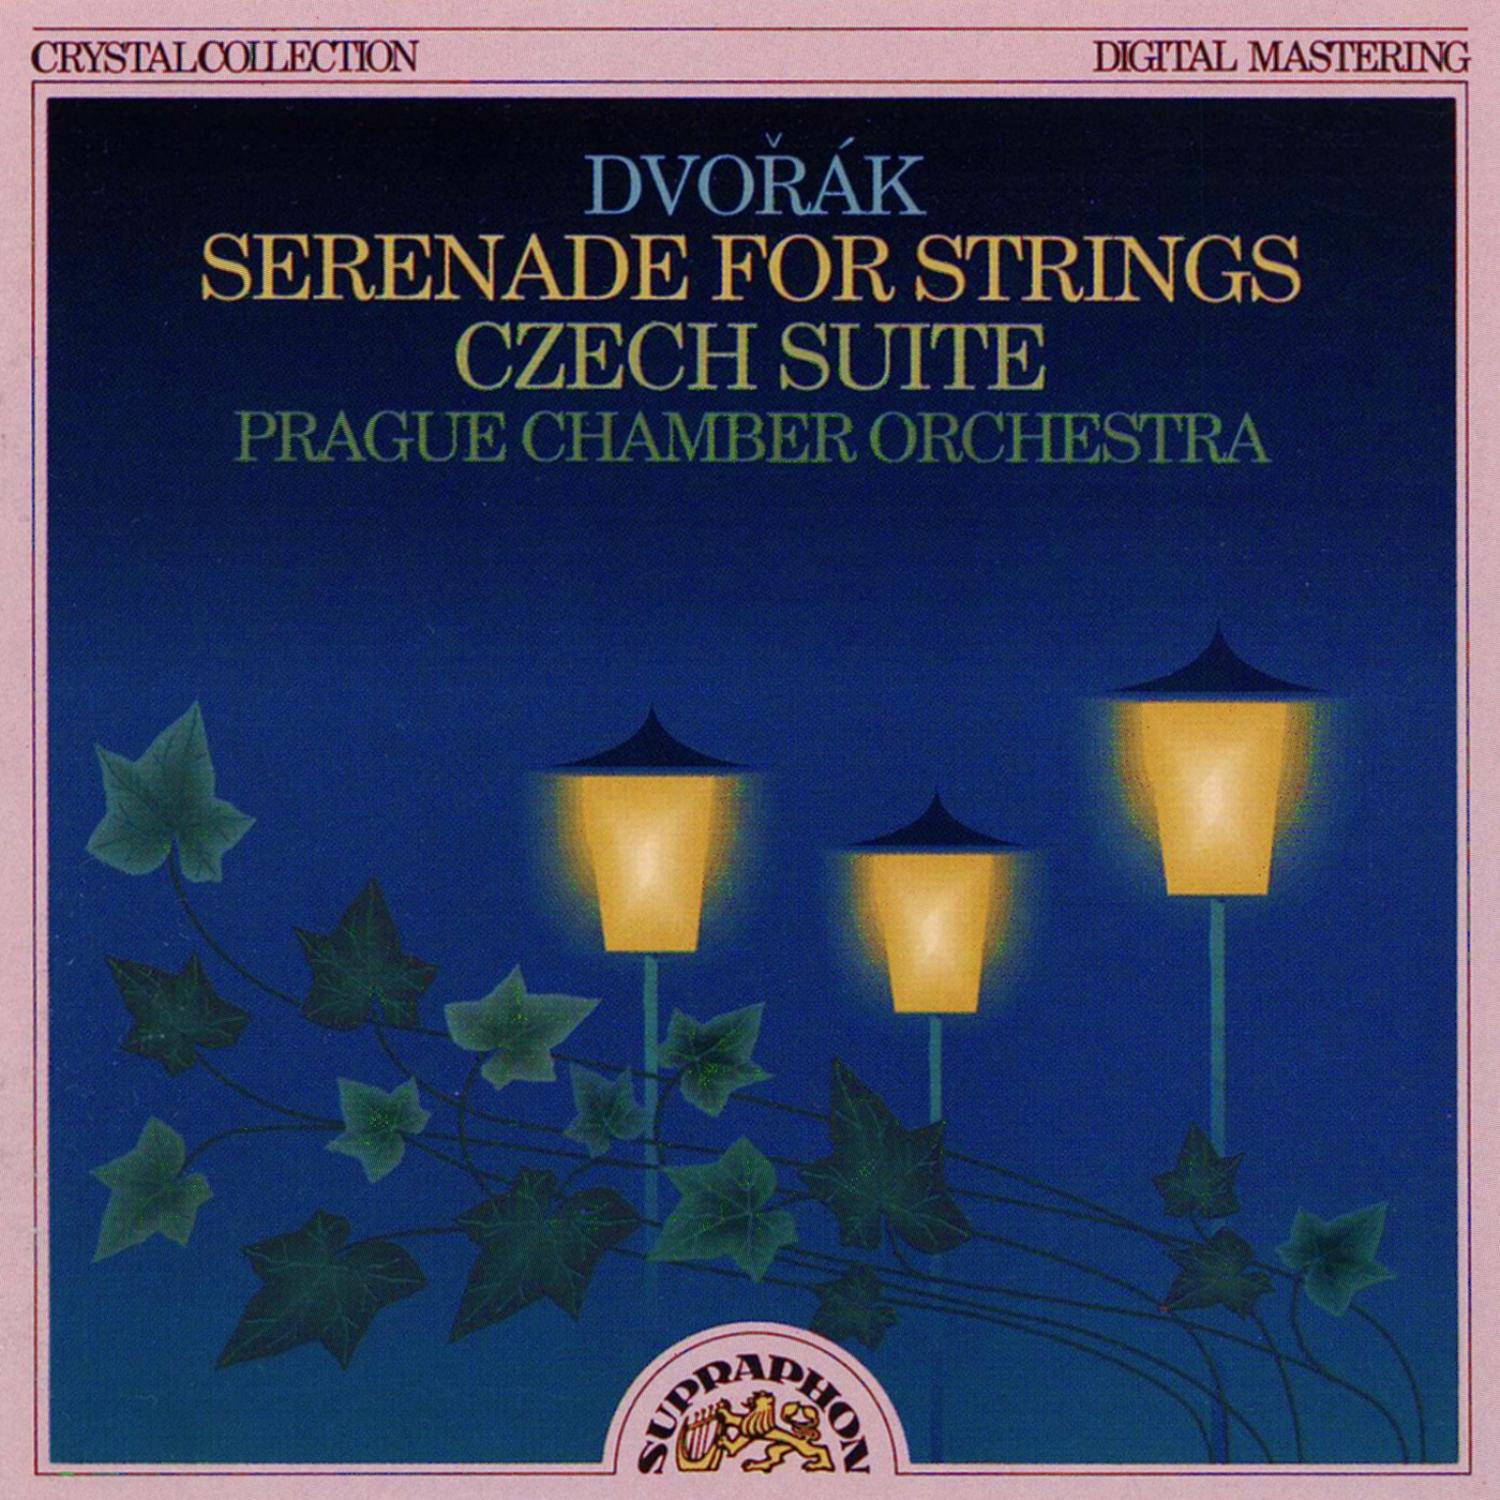 Czech suite in D major, Op. 39, I. Preludio (Pastorale). Allegro moderato